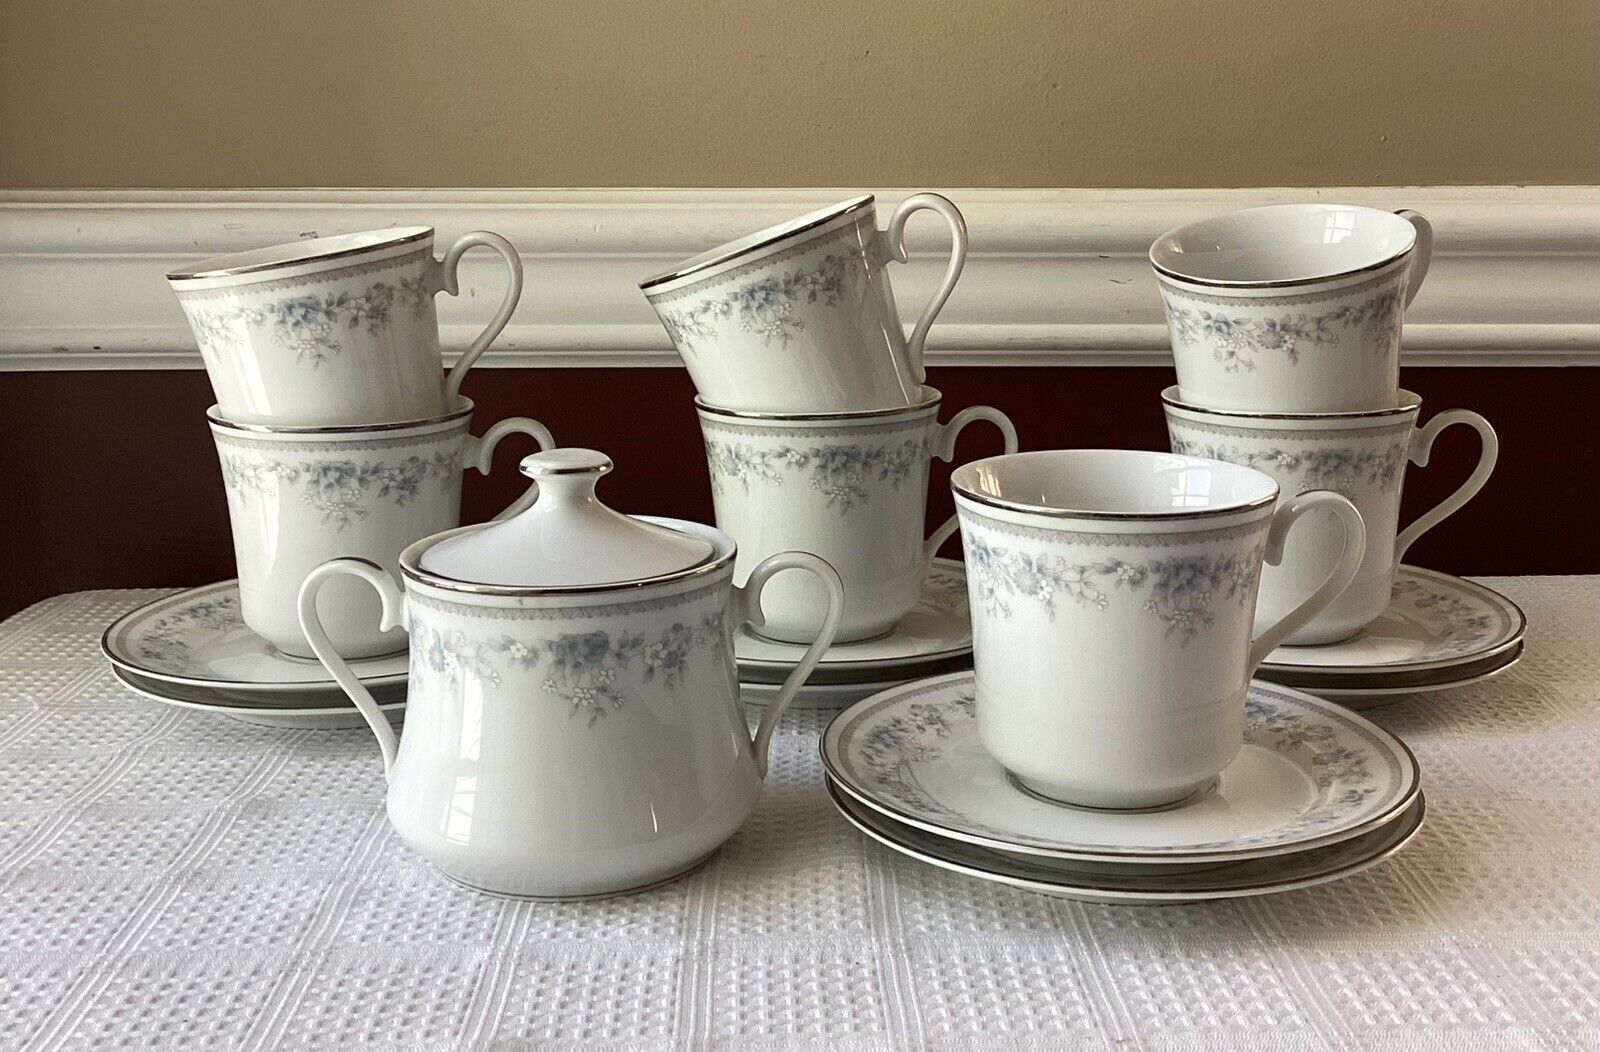 VTG 17-piece Lenox Bouquet Collection Porcelain Tea Cups, Saucers & Sugar Bowl